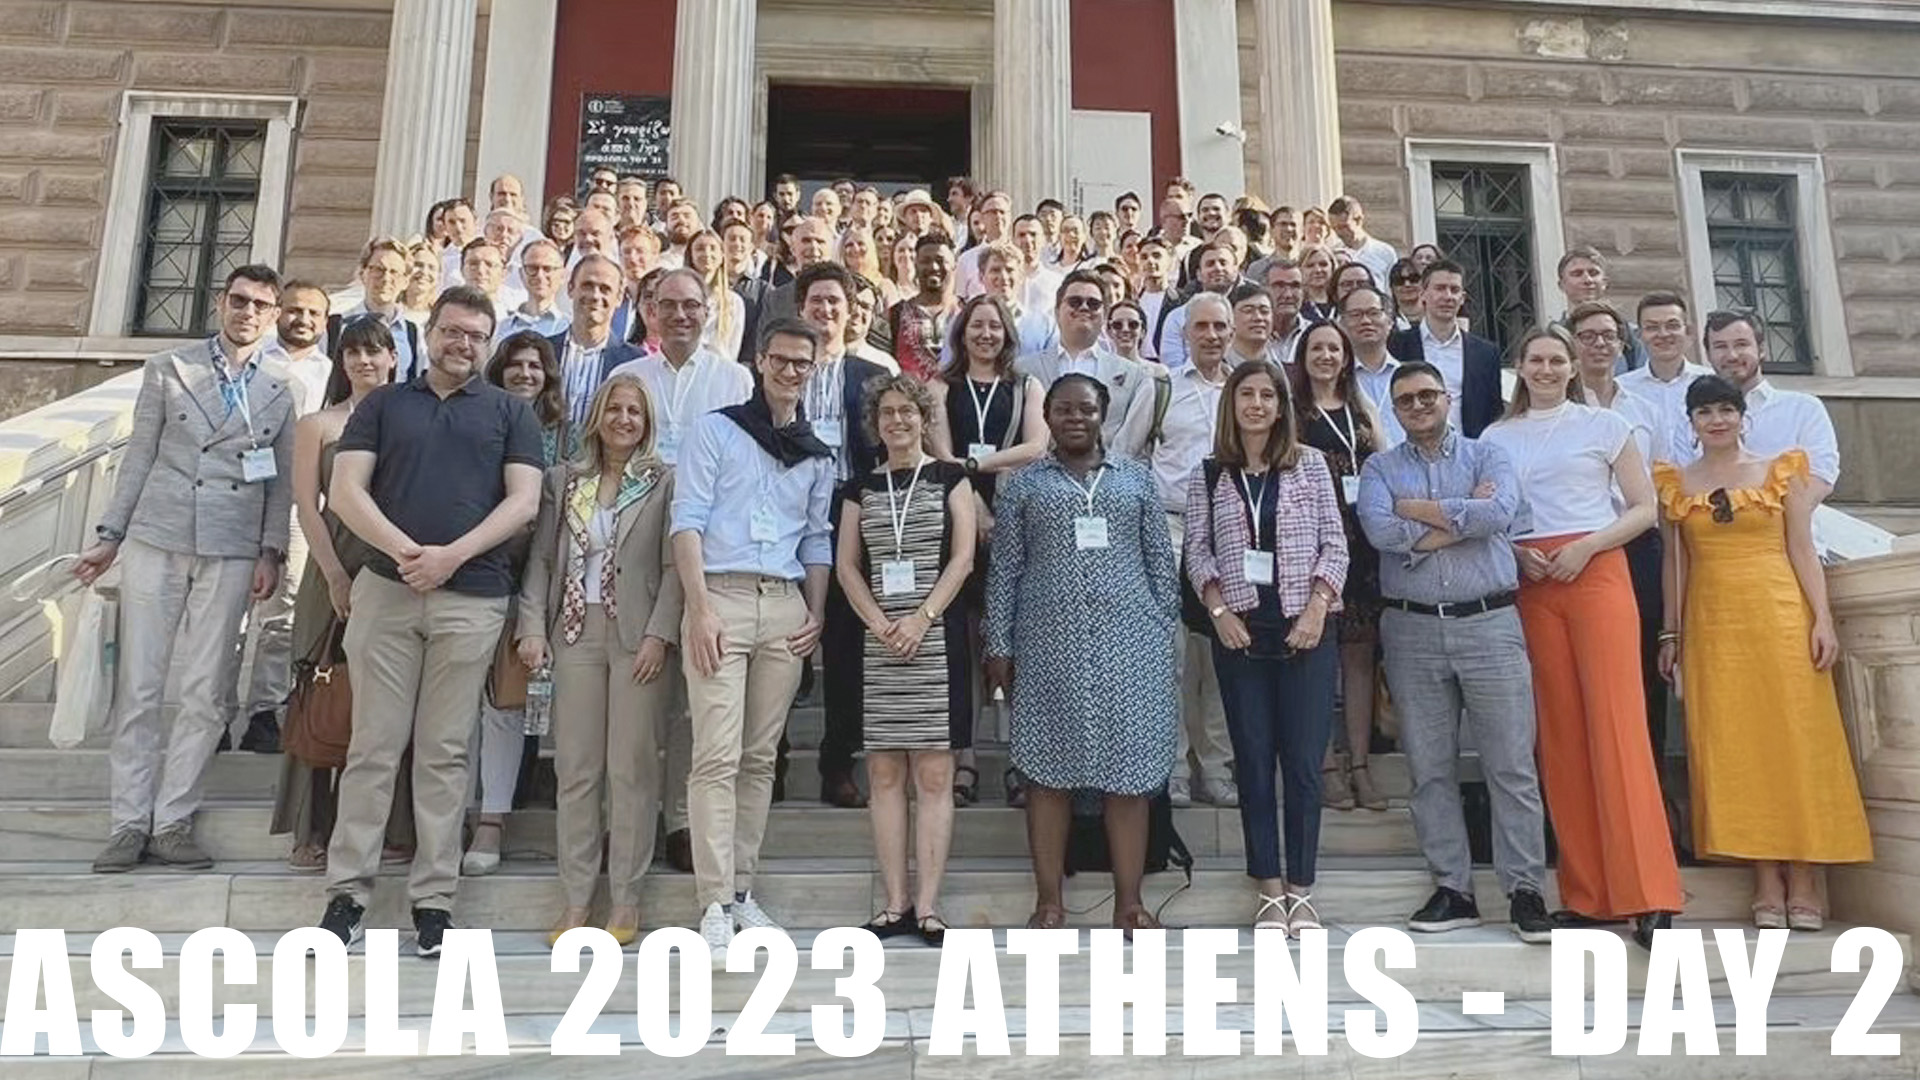 Ascola 2023 Athens - DAY 2